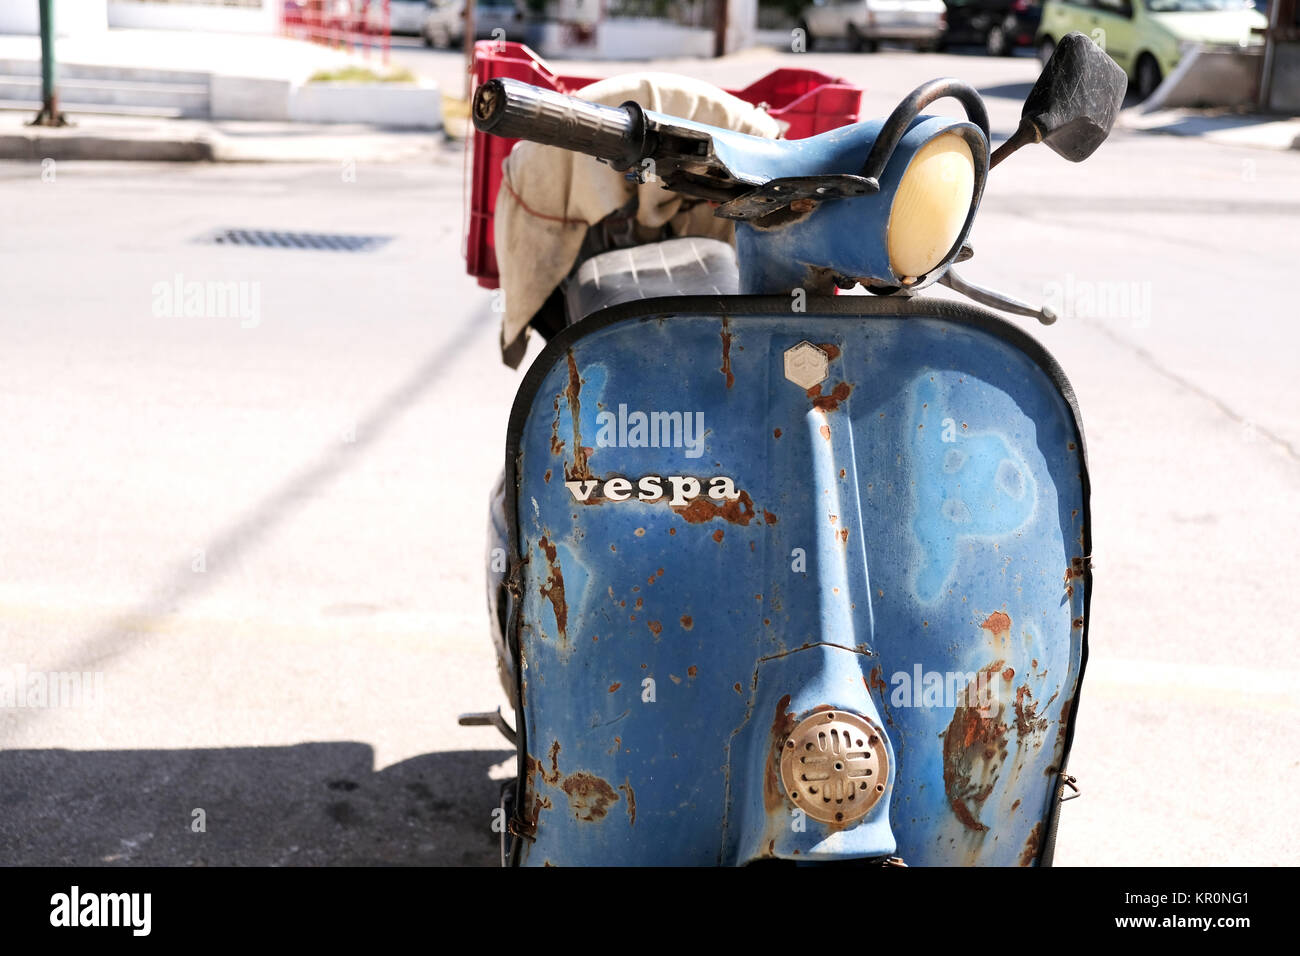 Un vieux, rouillé, bien utilisés Vespa scooter. La photo montre clairement l'insigne distinctif Vespa mis en évidence contre un bleu rouillé, carénage battues Banque D'Images